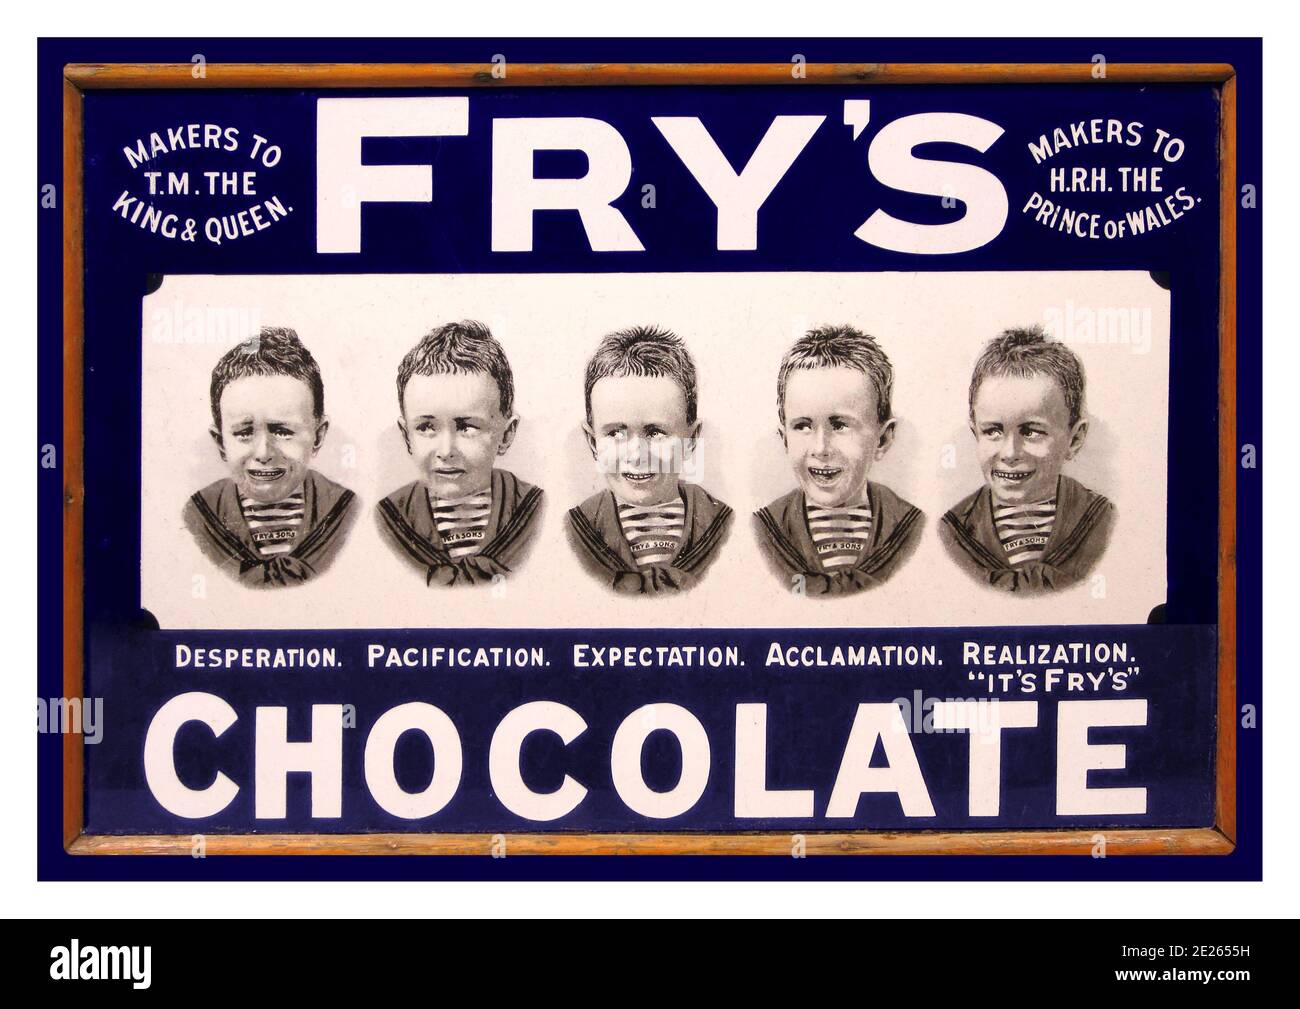 FRYS CHOCOLATE Vintage 1900 Emaille Wandtafel Werbung Fry's Chocolate Zeigt einen kleinen Jungen in 5 Stufen des Schokoladenbedürfnis & Erwartungen Süßwaren Süßigkeiten behandeln etc Entscheidungsträger HRH Prince Von Wales und dem King & Queen Stockfoto